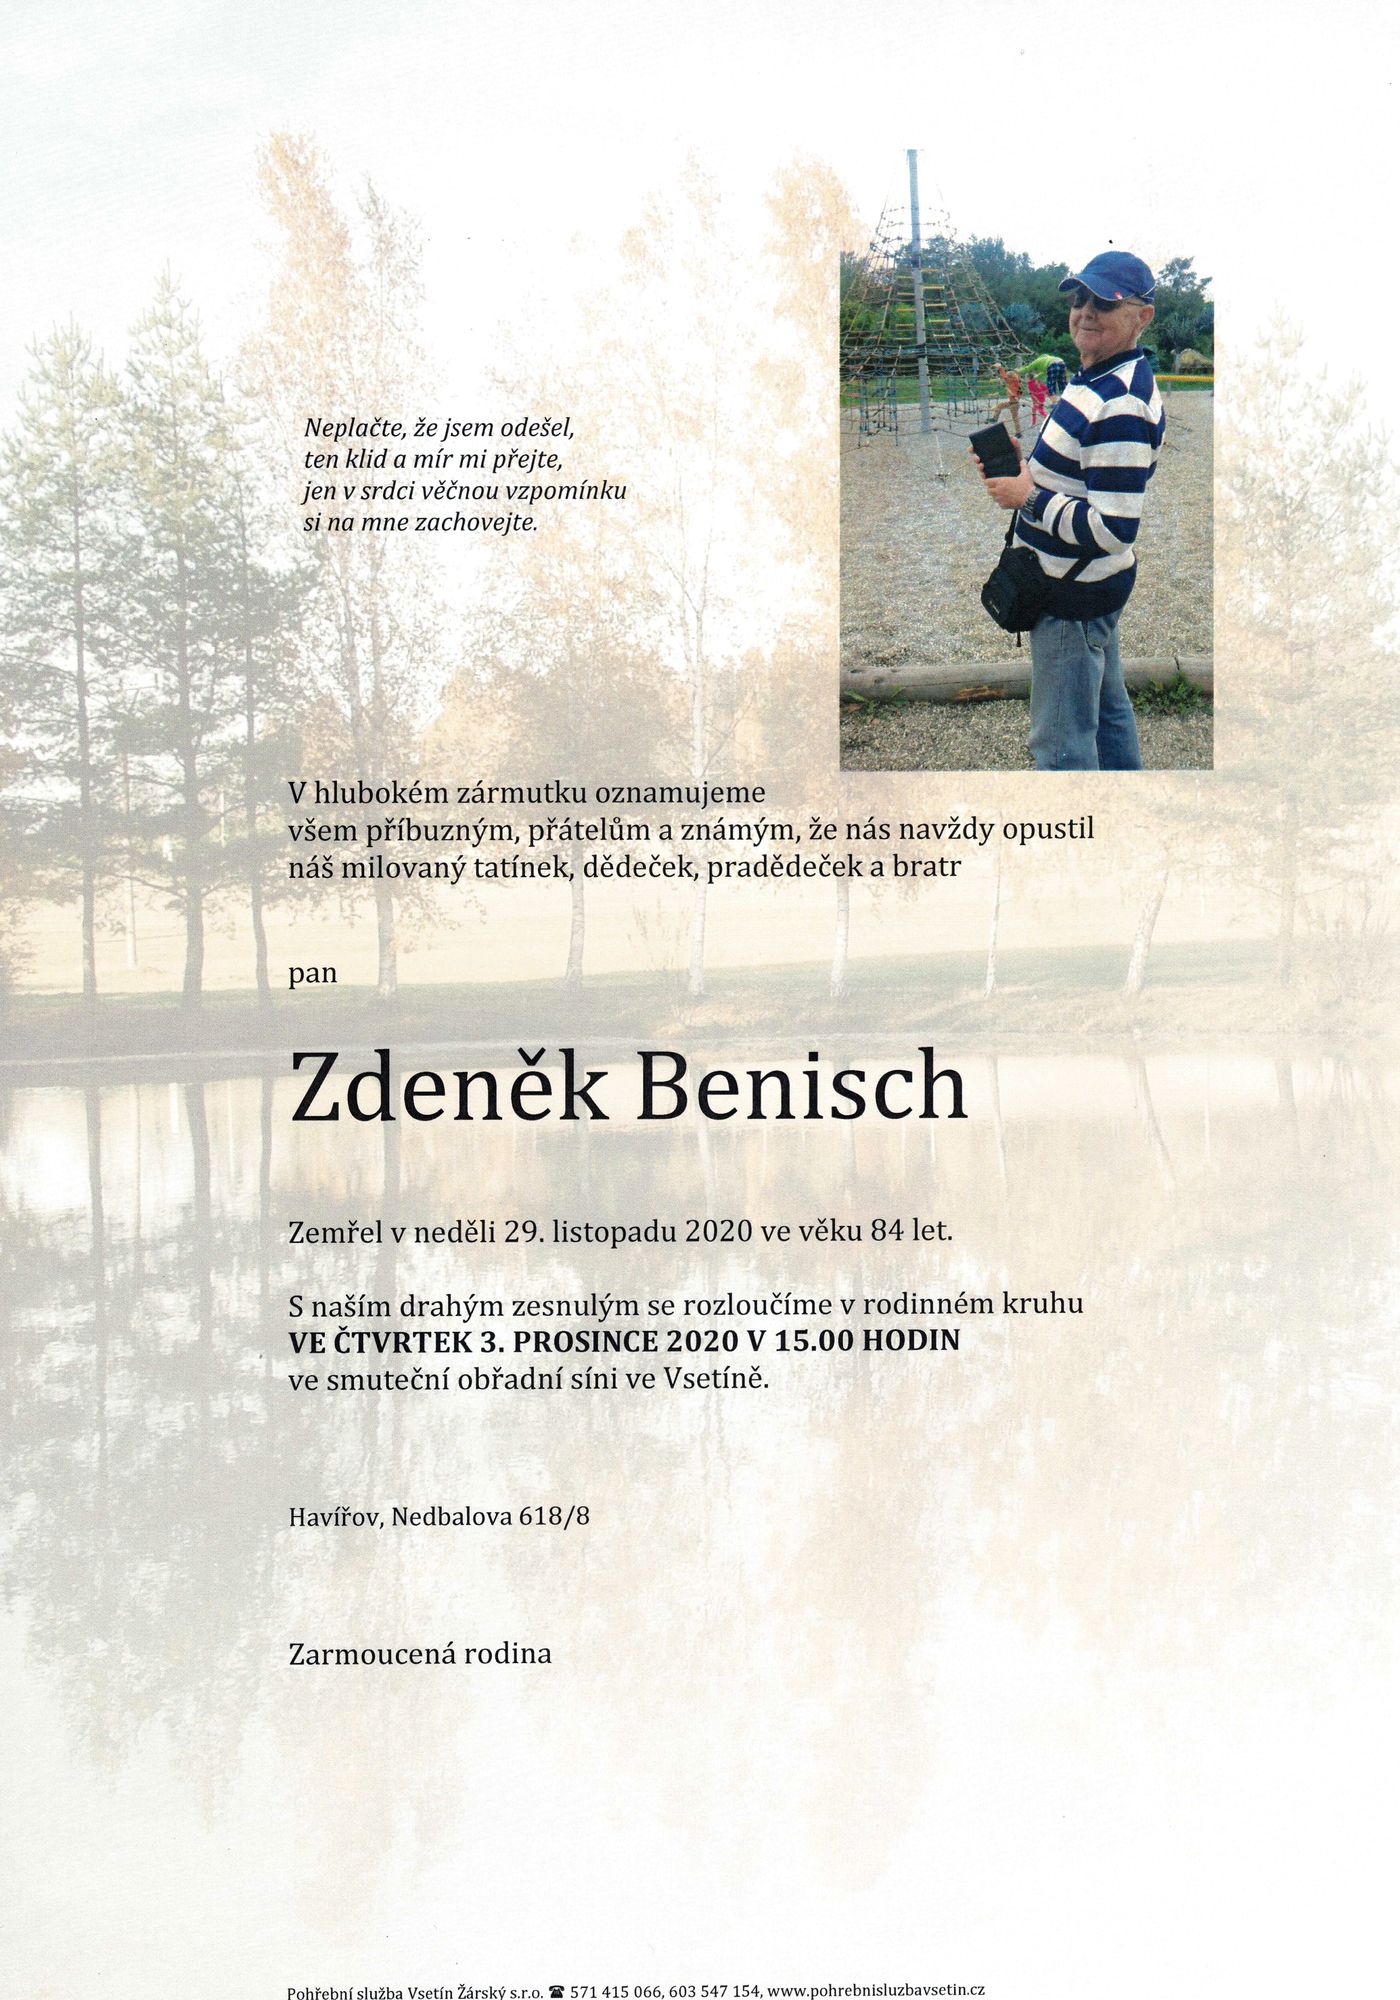 Zdeněk Benisch